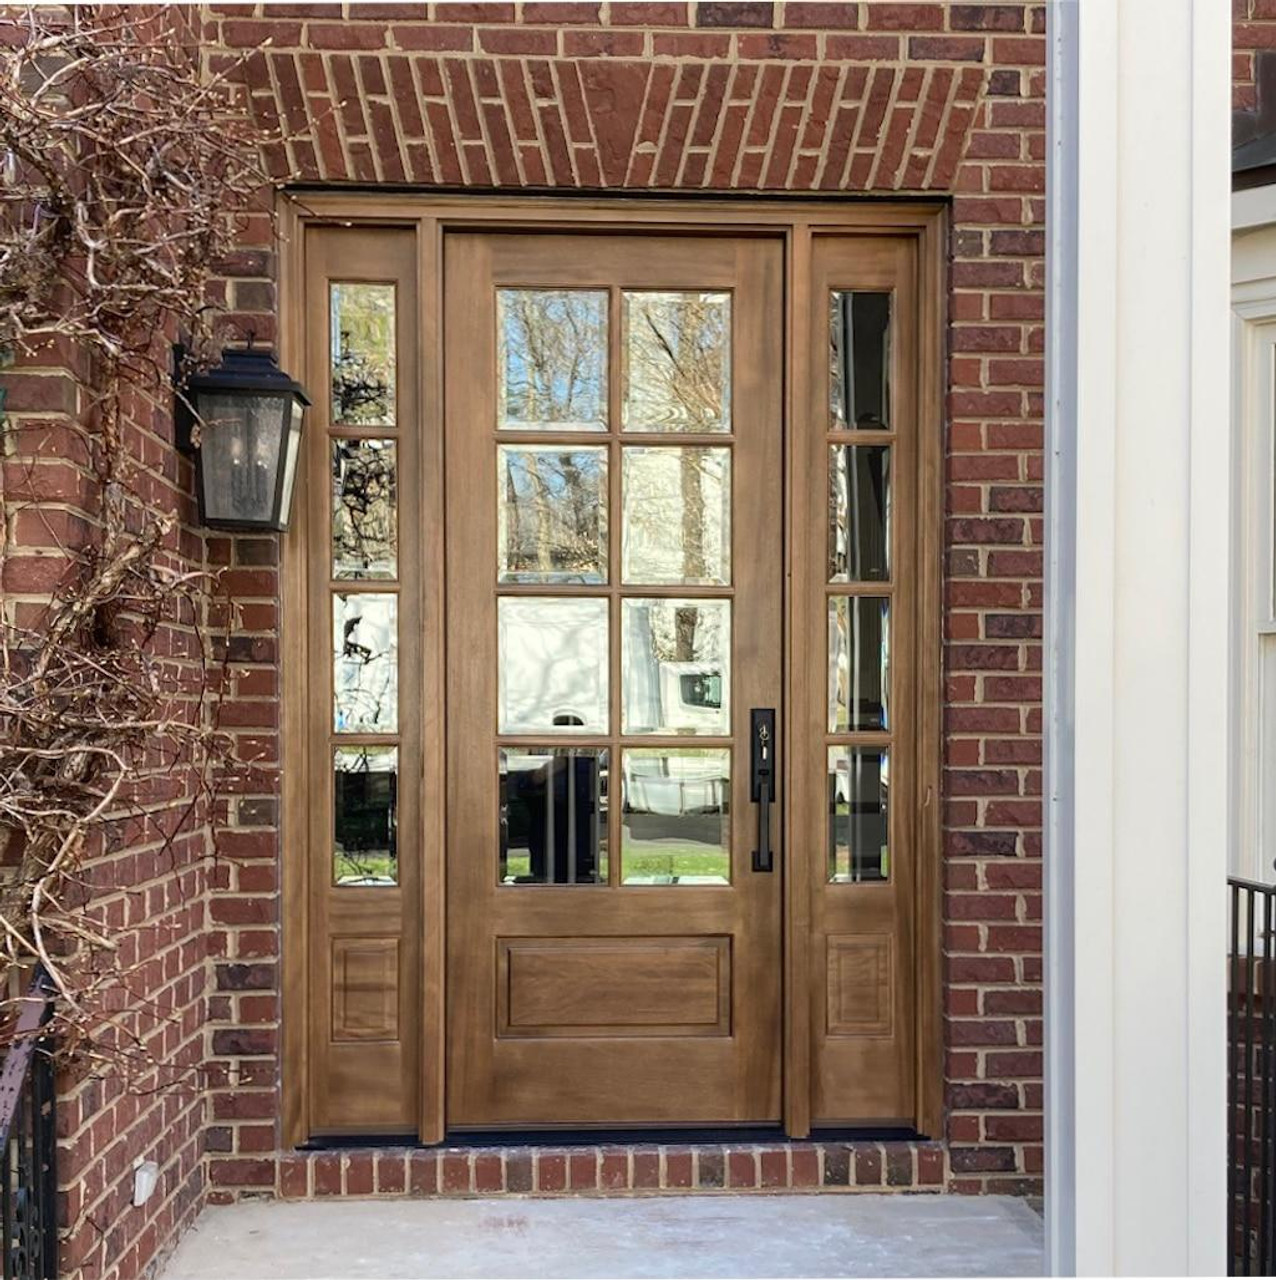 2Pcs Door Flush Bolts -Concealed Security Door Locks for Composite  Doors,Wood Doors,Double Doors etc - 8 inches